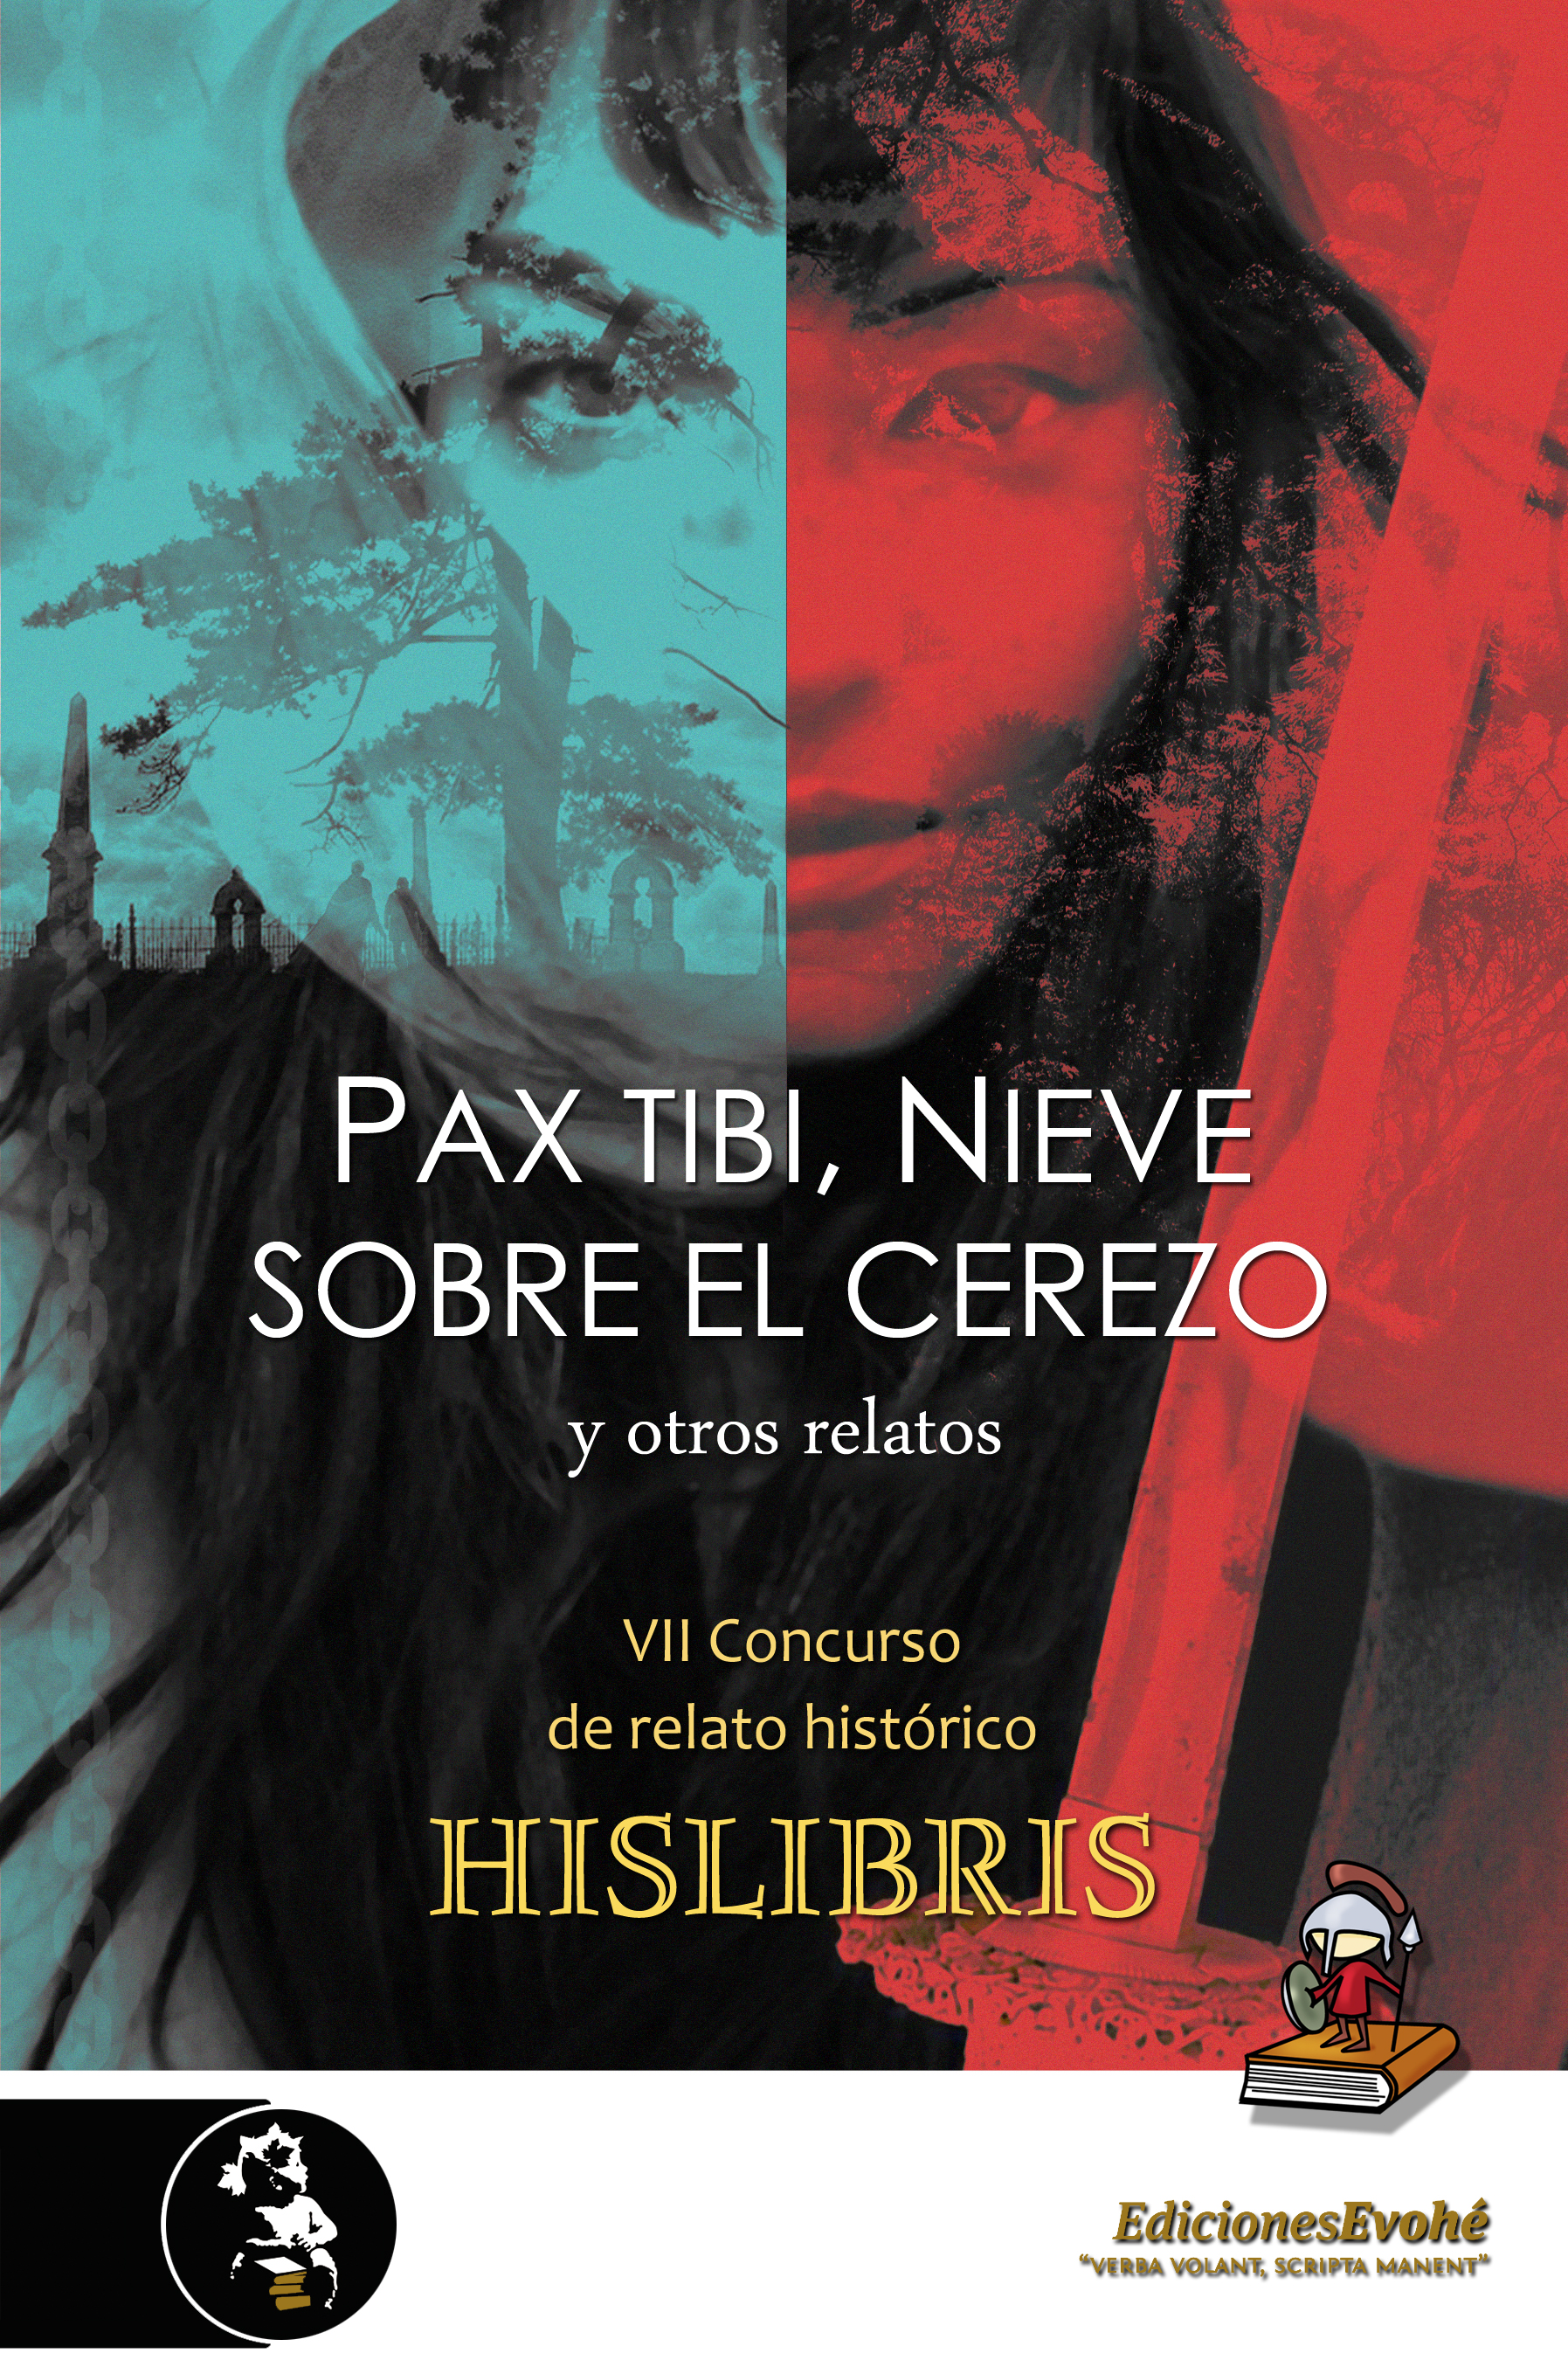 Pax tibi, Nieve sobre el cerezo y otros relatos (VII Premio de Hislibris) – VV. AA.